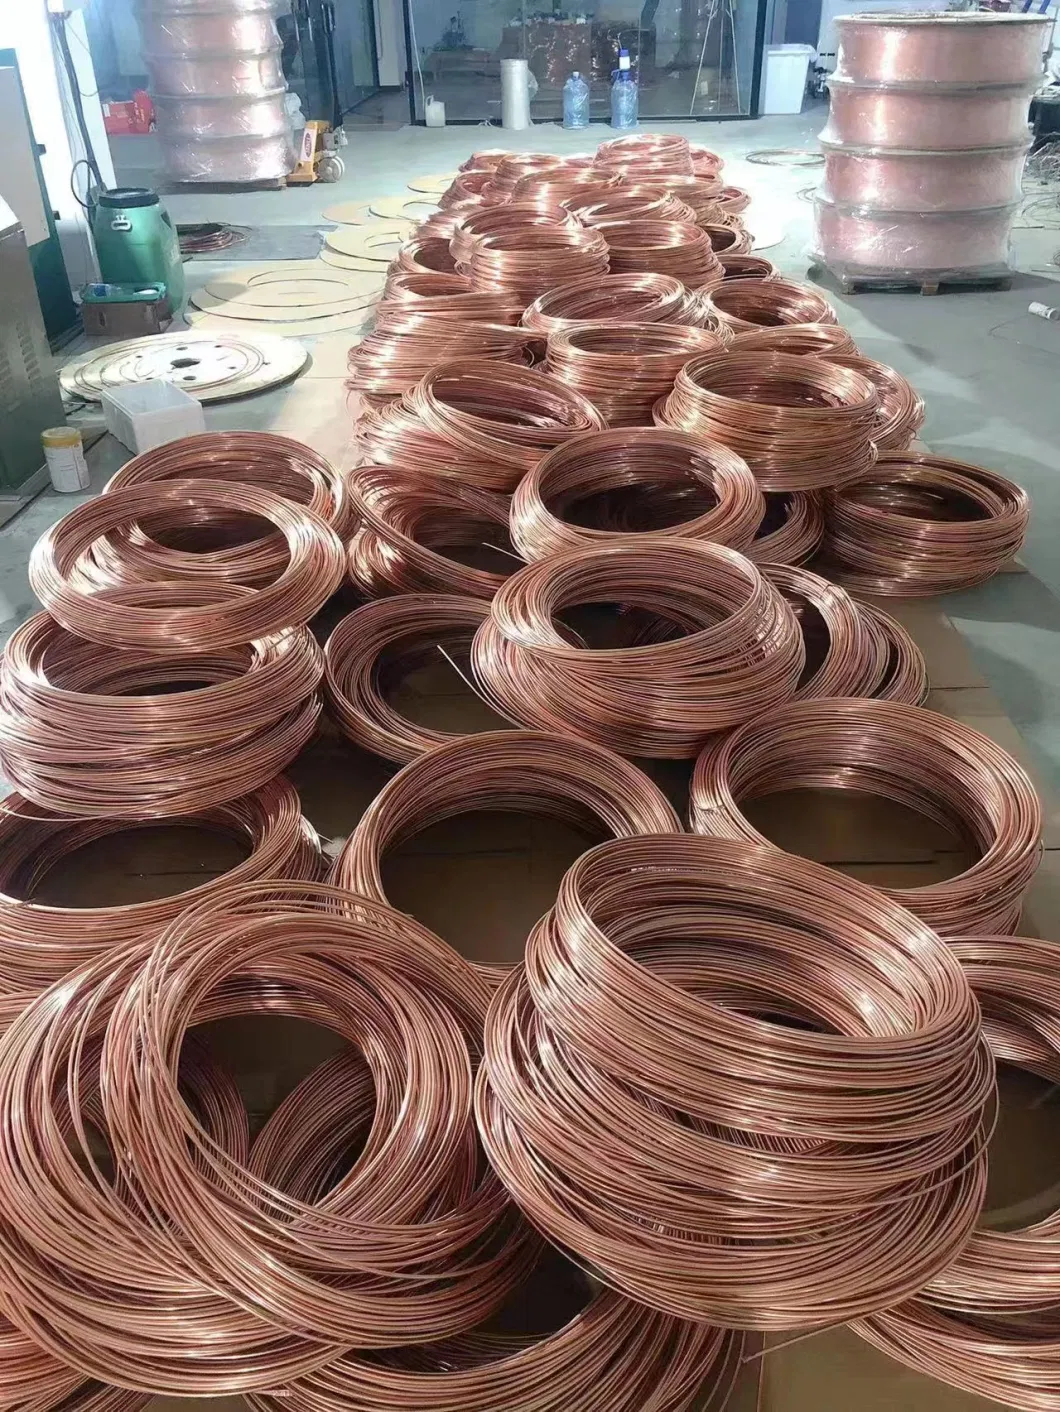 High Purity Copper Wire Stranded/Copper Wire Strand/Bare Copper Wire/Copper Metalc10100 C10200 C11000 C12000 C21000 C22000 C23000alloy/Square/Round/Precision